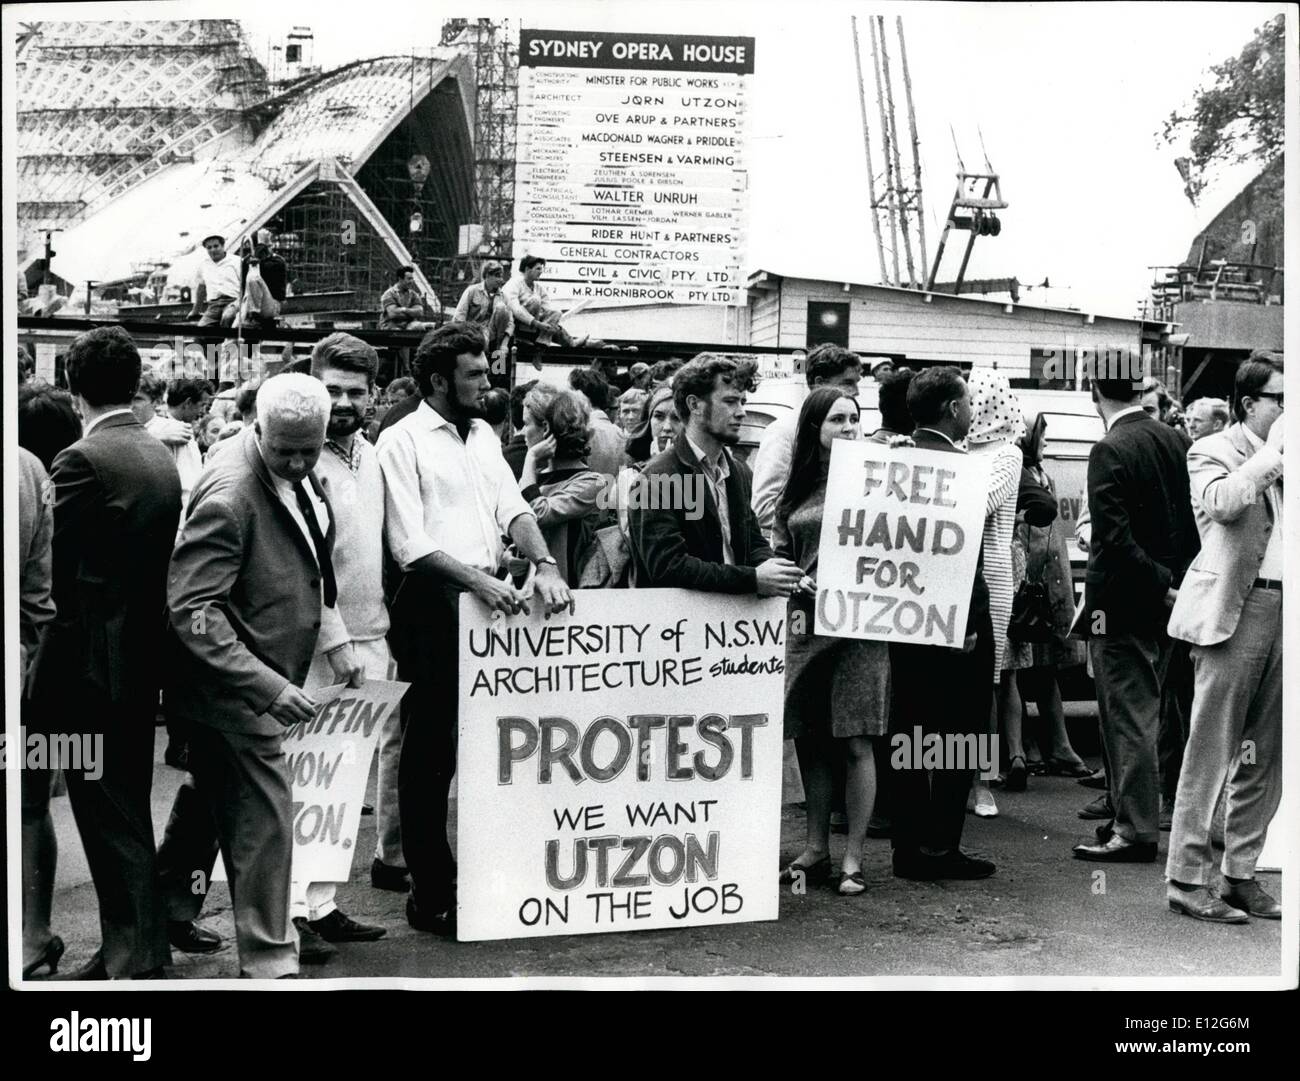 10 janvier 2012 - pour manifester devant l'Opéra de Sydney Joren Utzon, le concepteur, avait remis cette démission au gouvernement de l'état en mars 1966. Banque D'Images